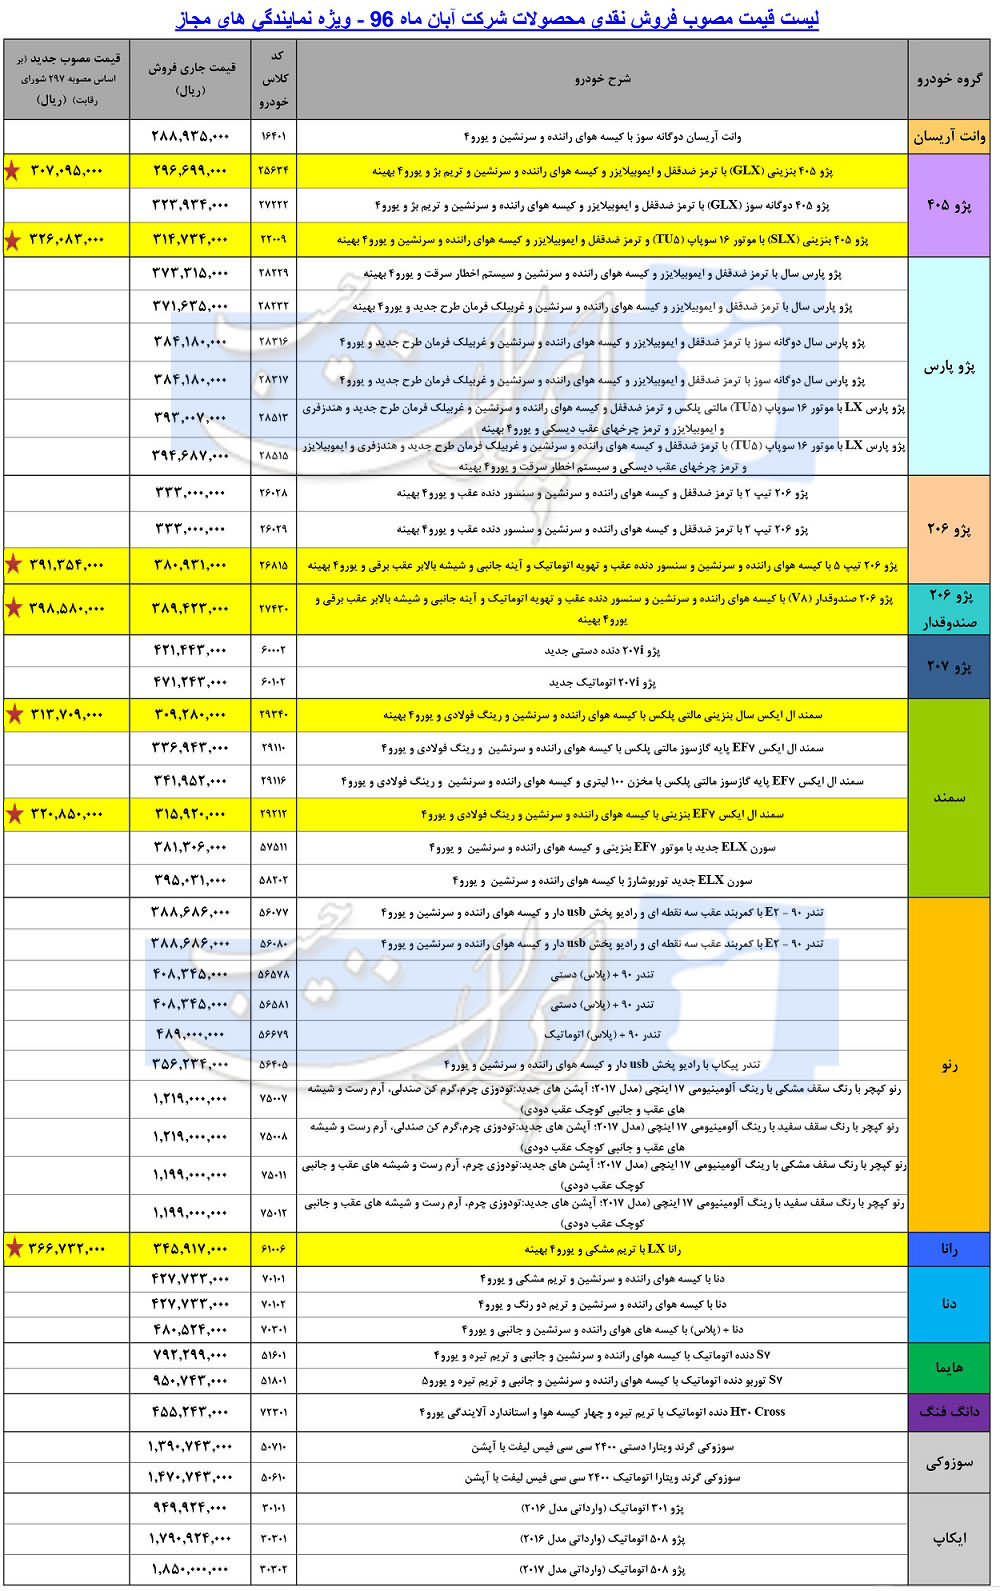 لیست قیمت کلیه محصولات ایران خودرو ویژه آبان ماه 96 منتشر شد.  